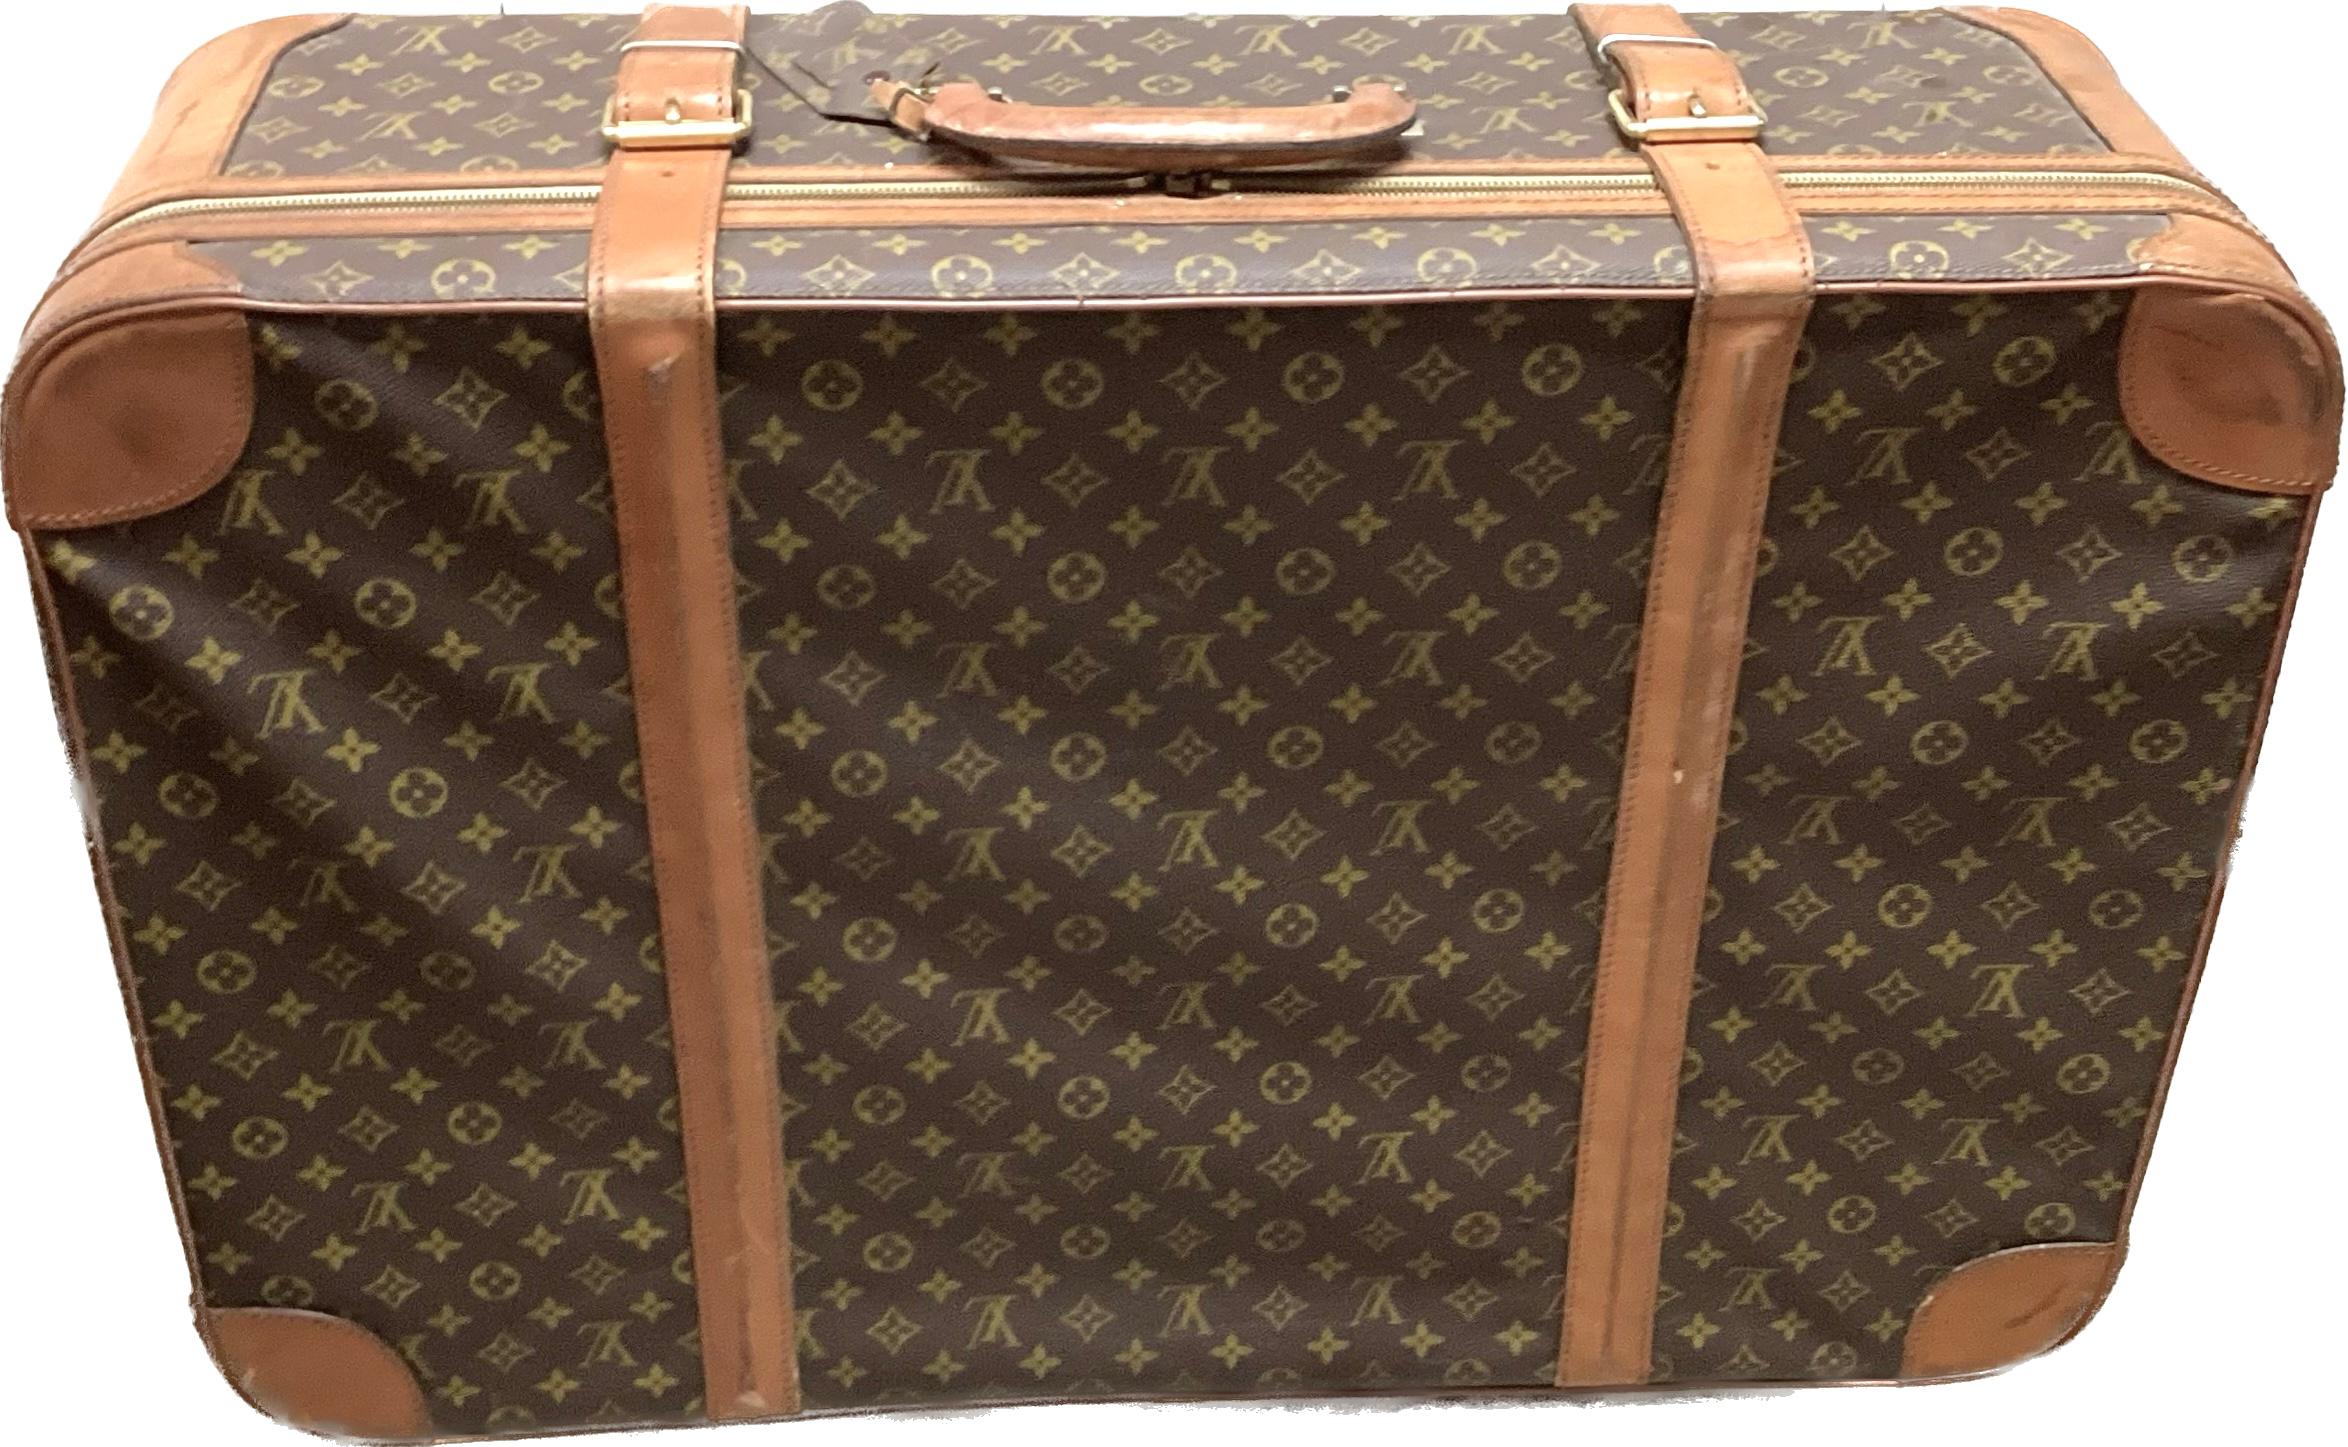 Grande valise vintage en cuir Louis Vuitton. Ce magnifique bagage est doté d'une poignée ronde et de fermetures à boucle. Le tissu intérieur de couleur crème est en bon état et comporte deux poches latérales et des fermetures à boucle. Serrure et